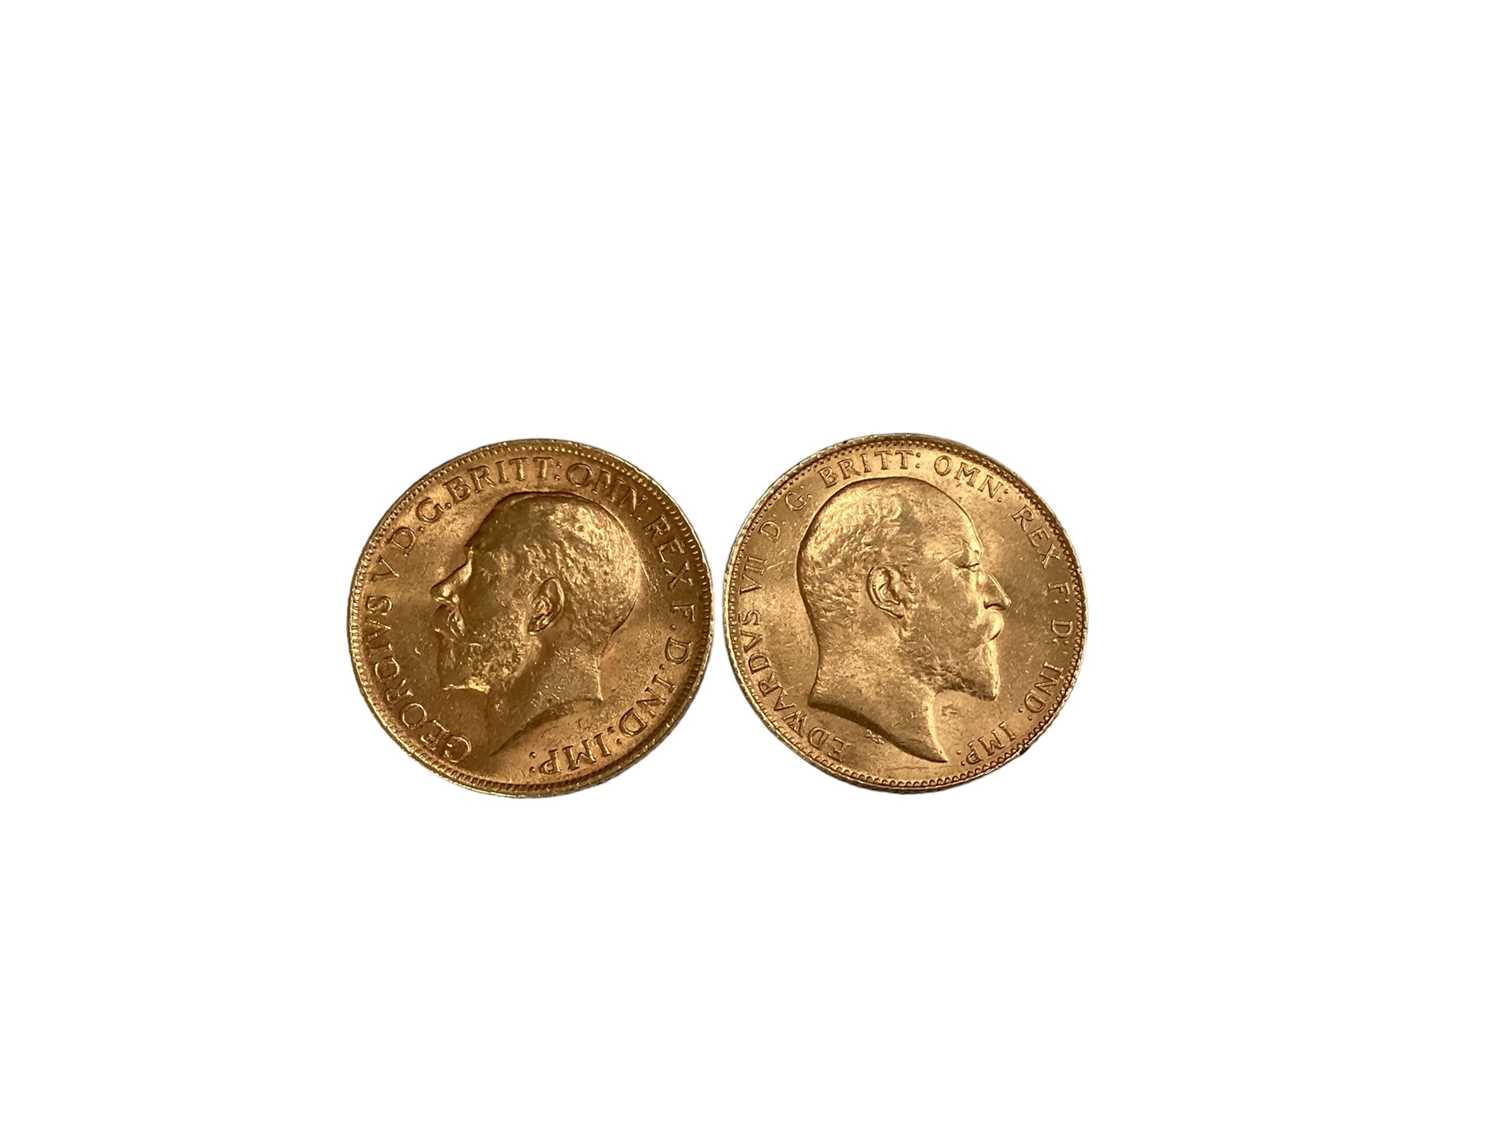 G.B. - Gold Sovereigns Edward VII 1910 EF & George V 1913 GVF (2 coins) - Image 2 of 2